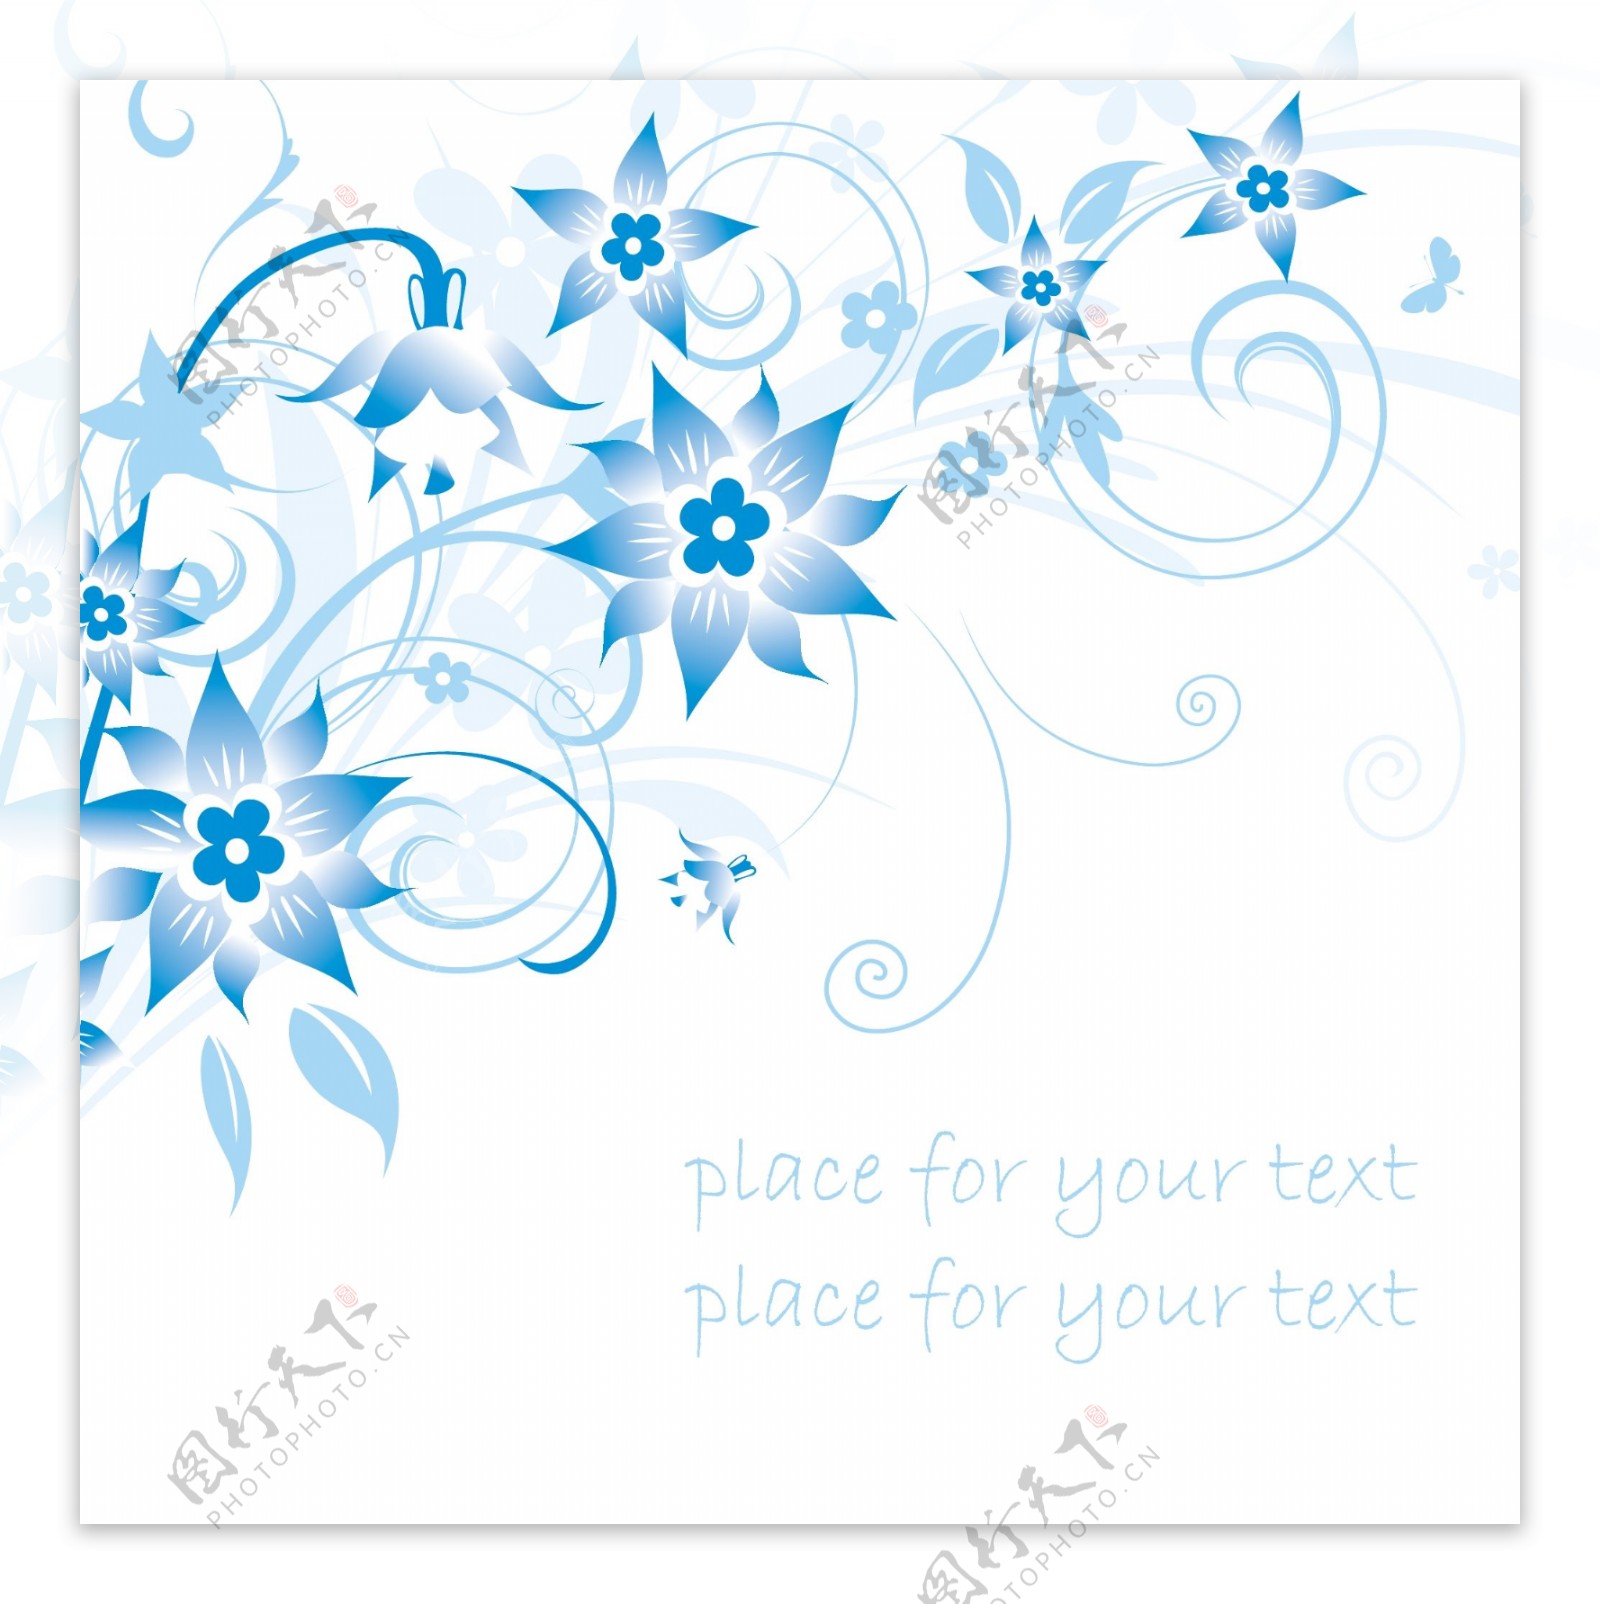 简约的蓝色手绘花卉和在背景矢量素材1文本模式